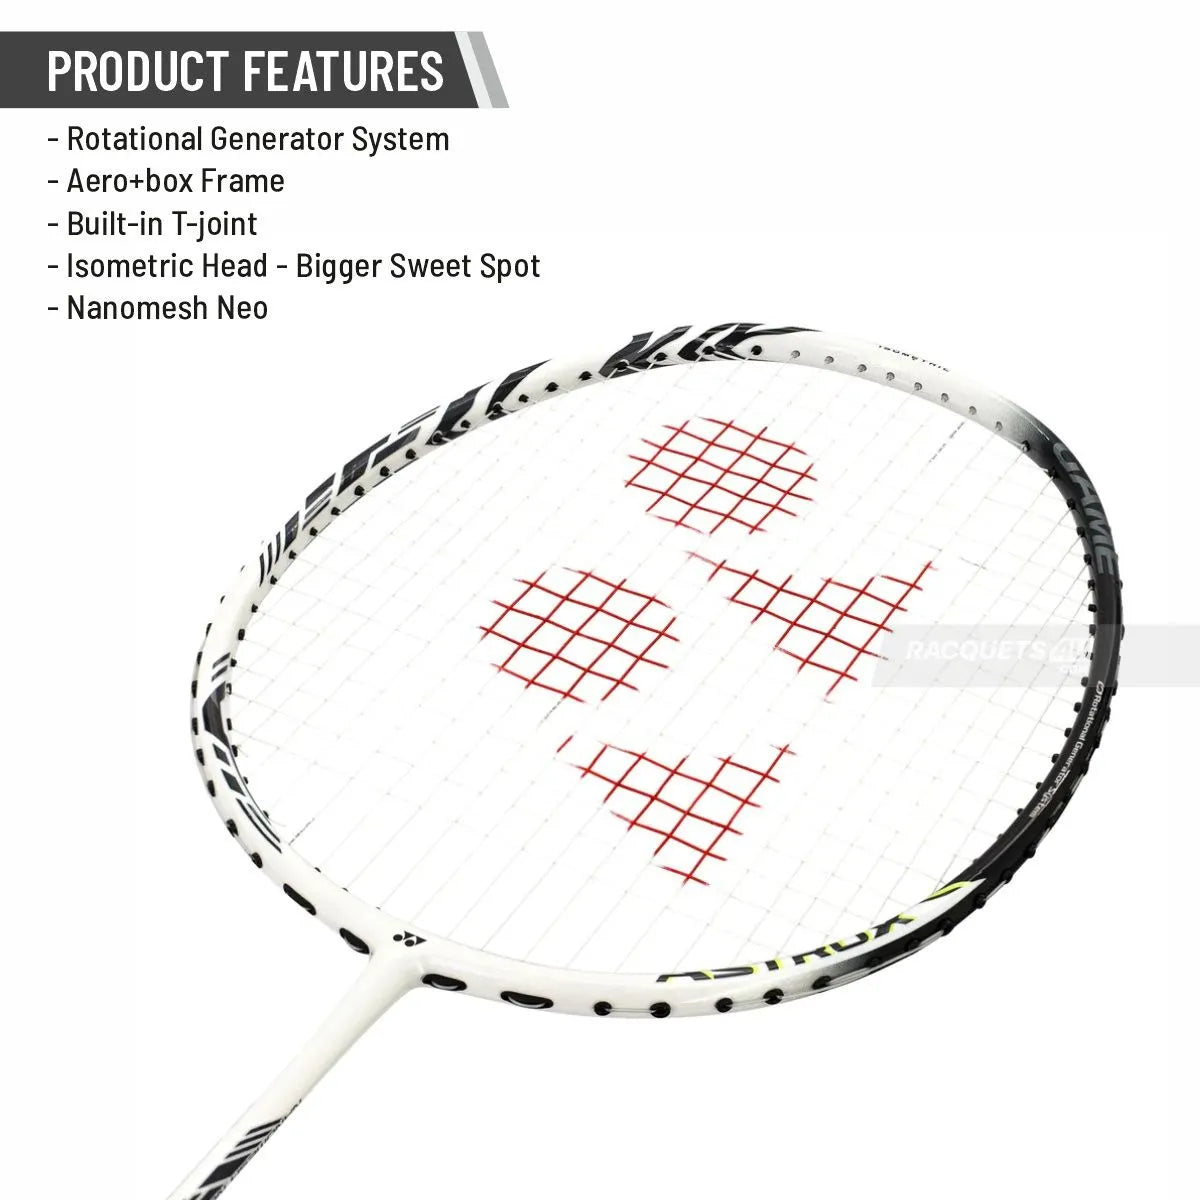 YONEX Astrox 99 Game Badminton Racquet -White Tiger